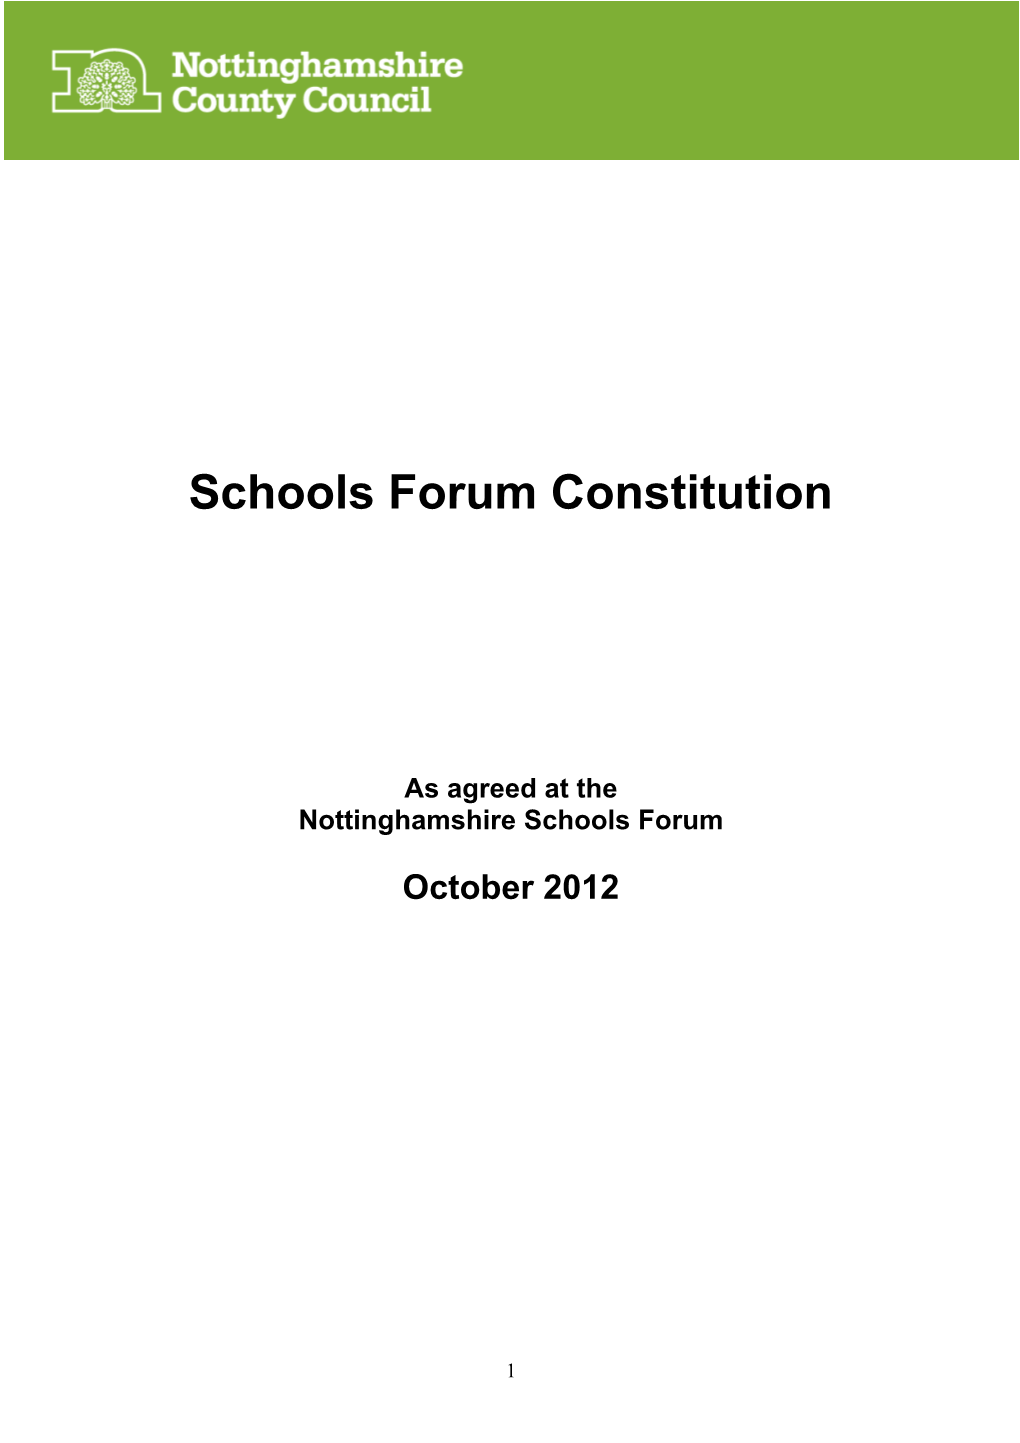 Schools Forum Constitution